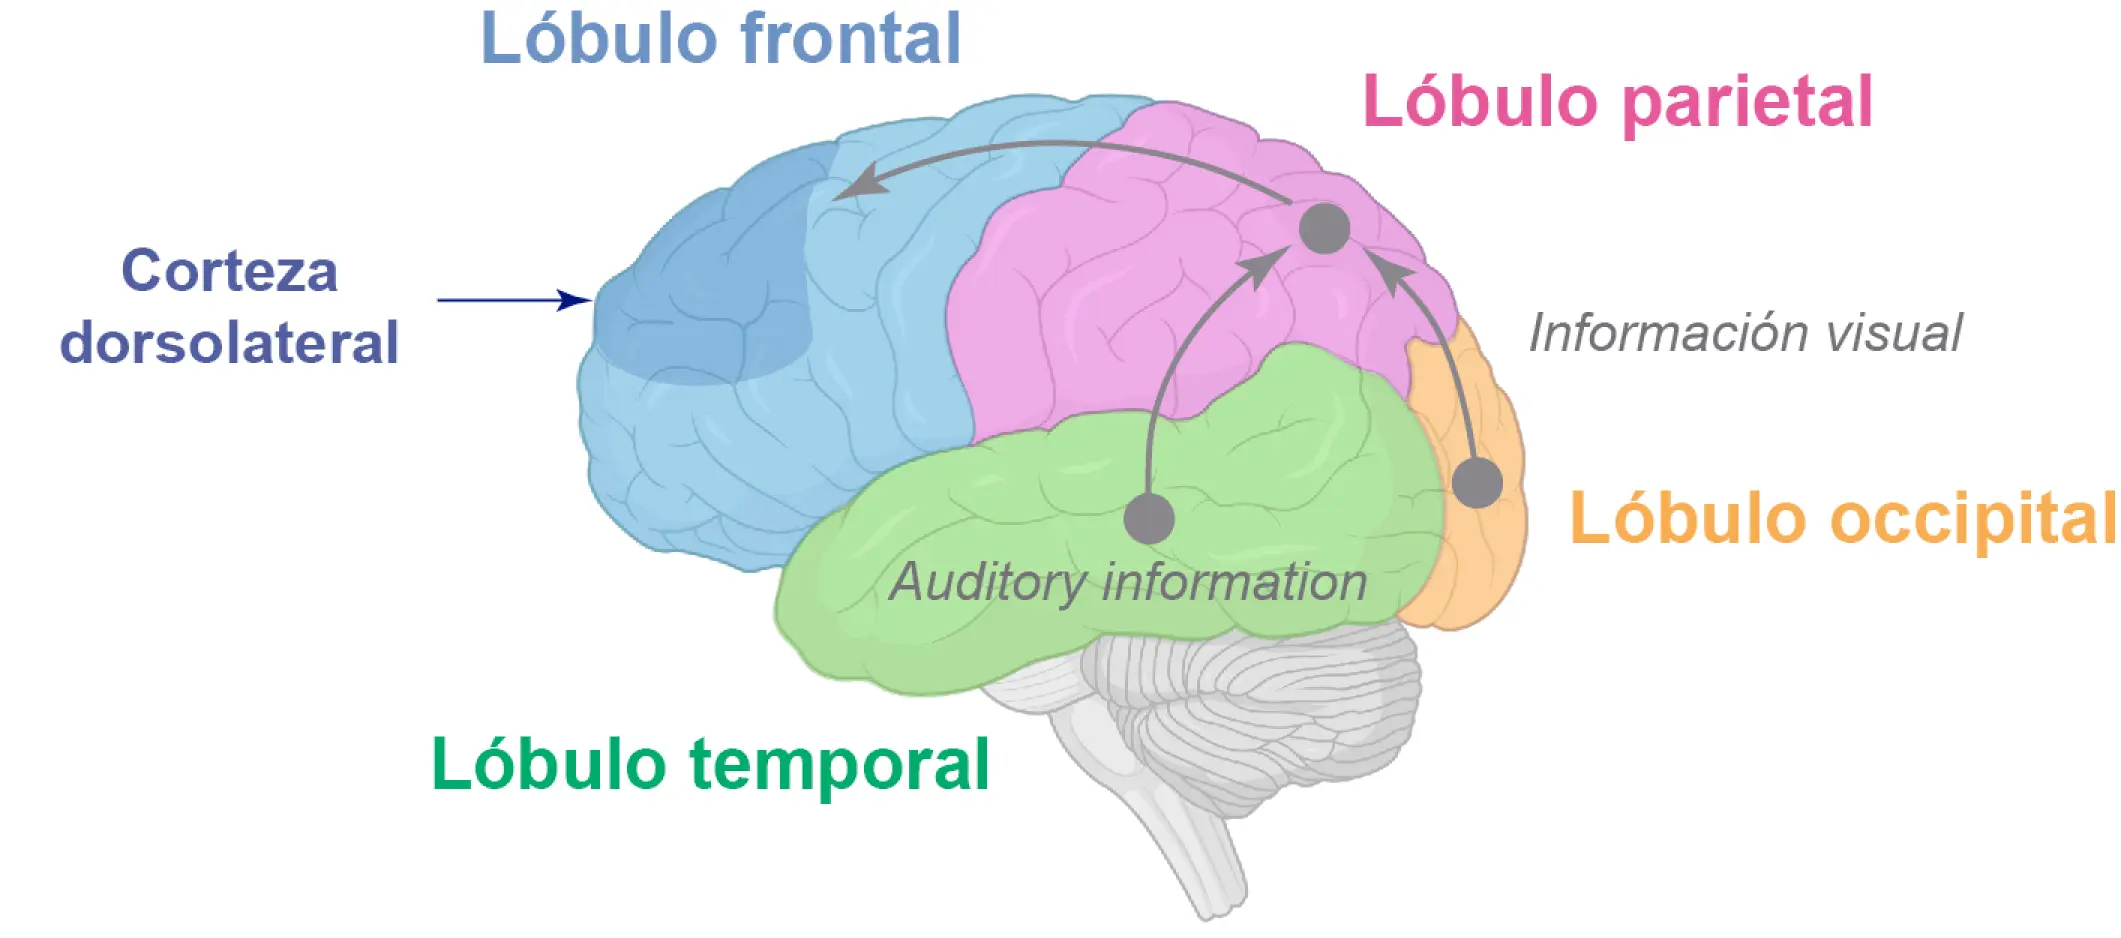 partes del.cerebro.donde retiene la inteligencia - Qué parte del cerebro retiene el aprendizaje